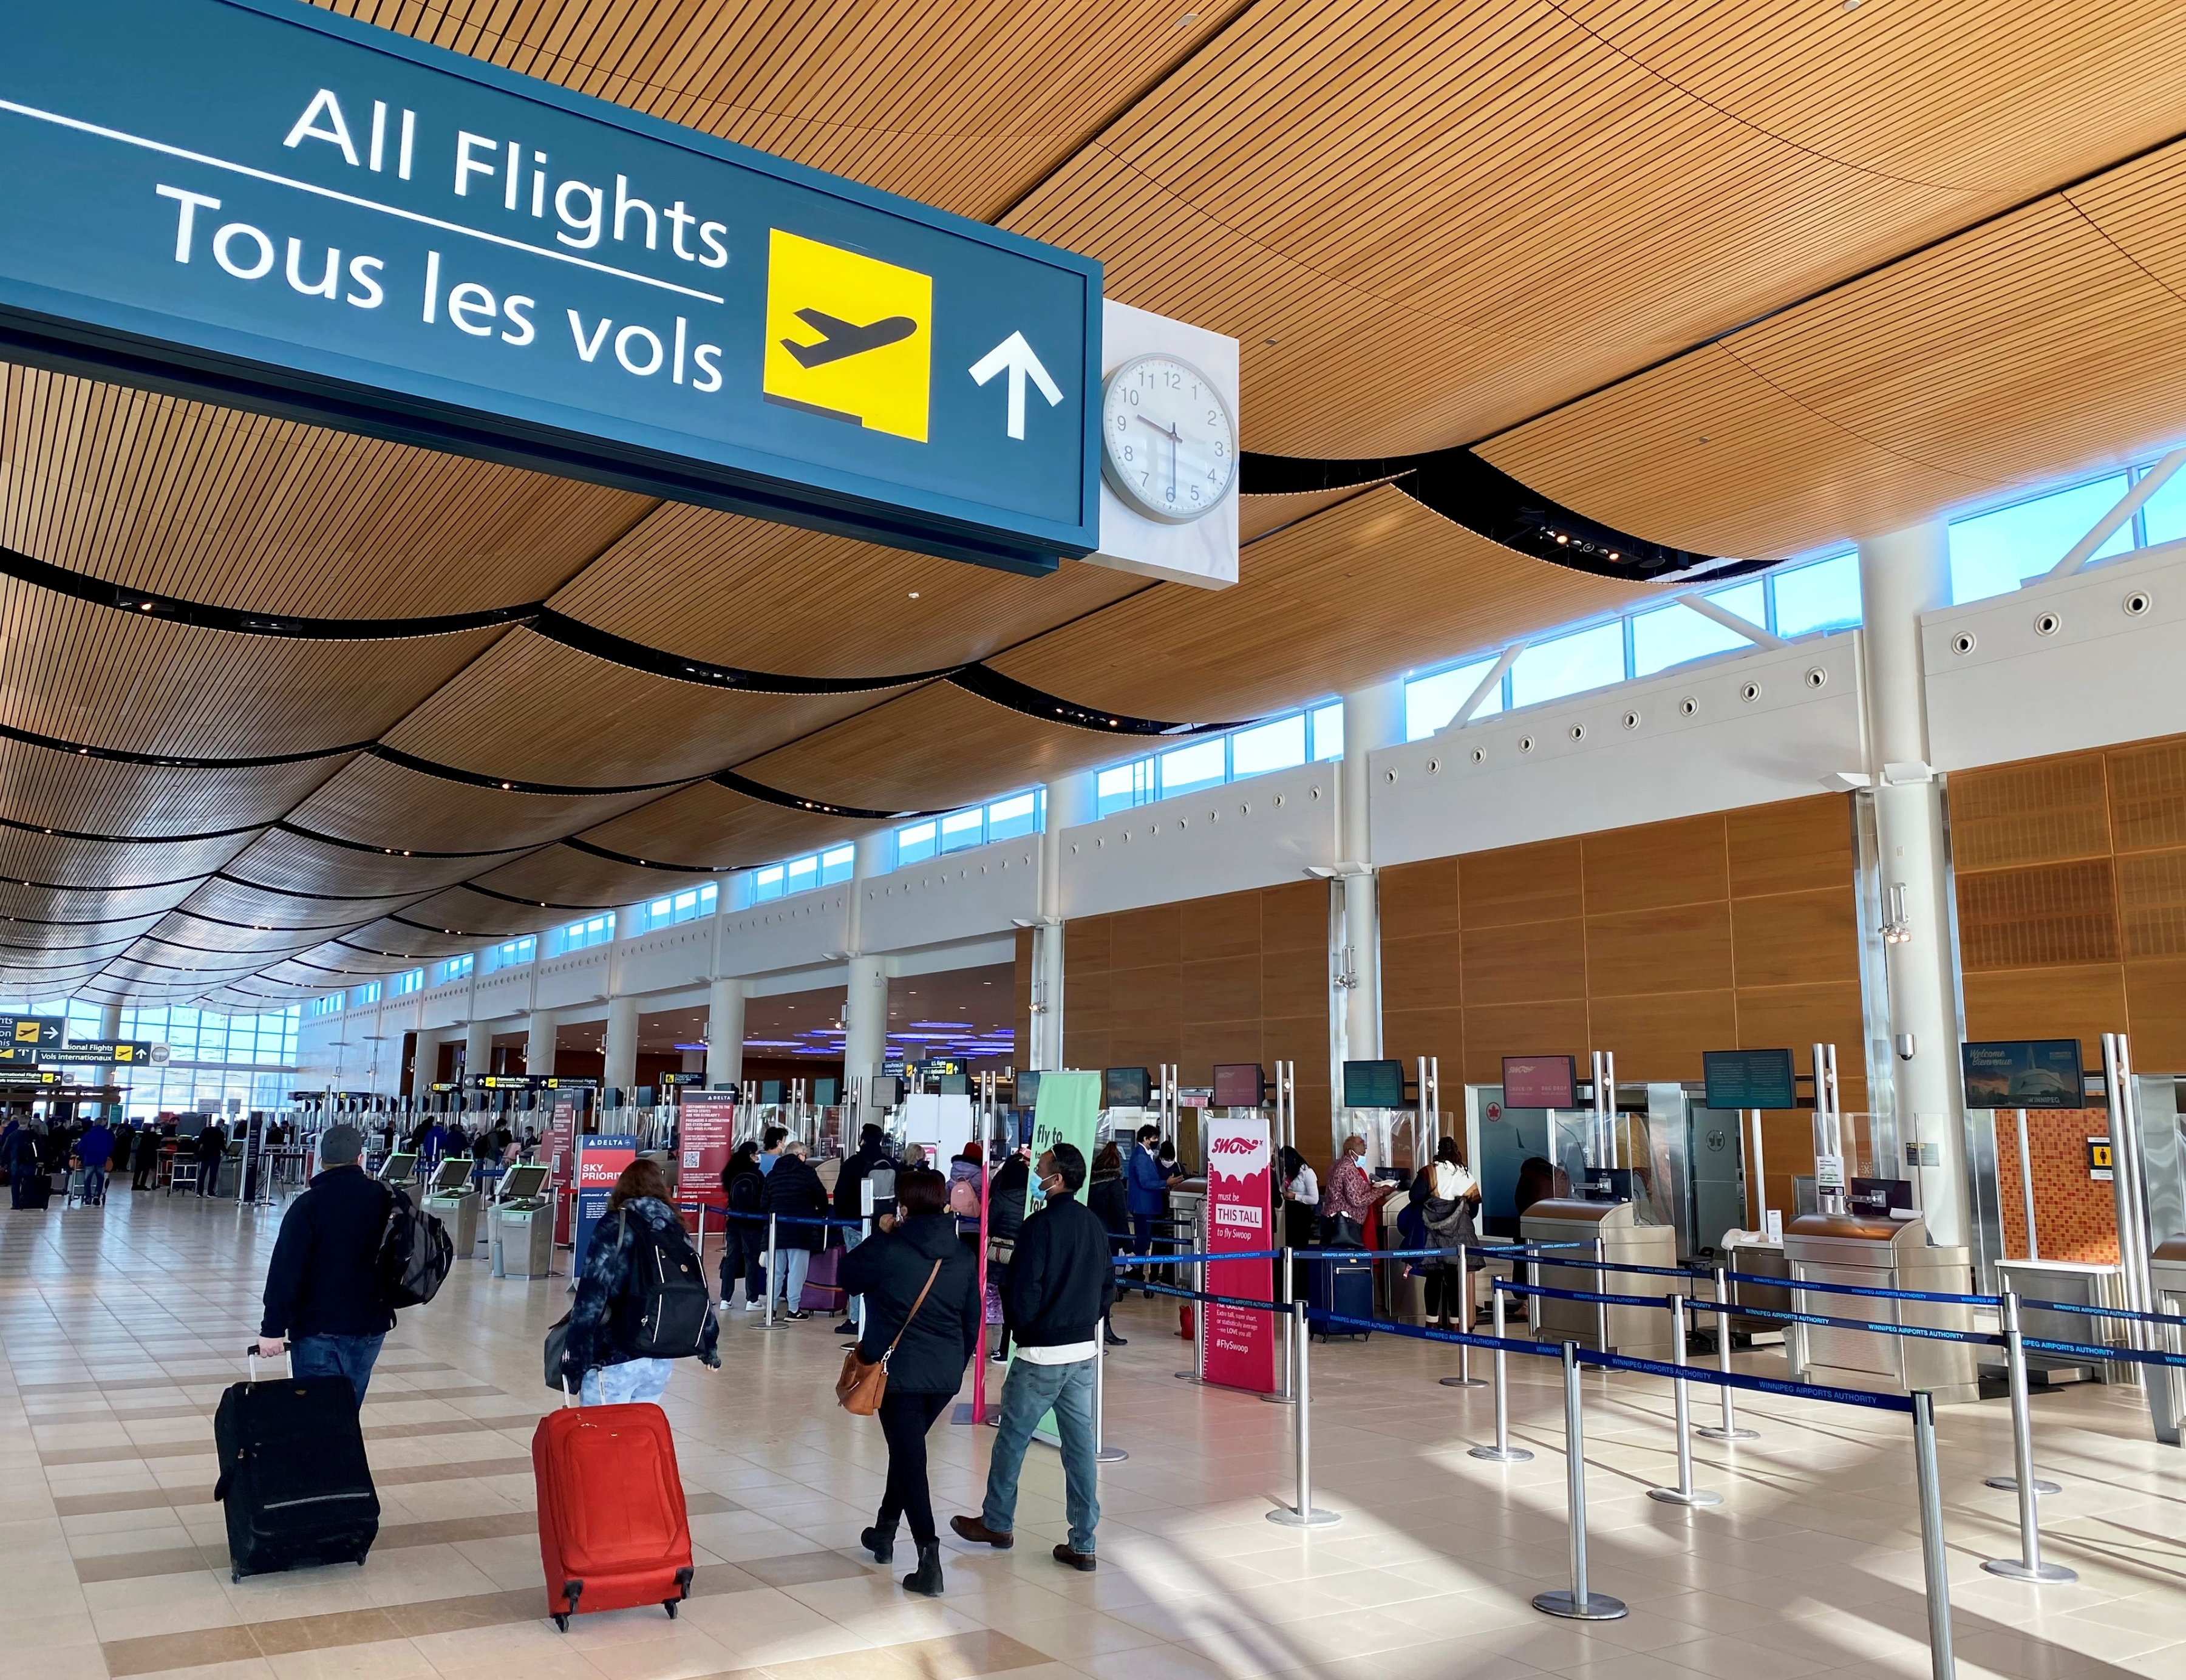 Des voyageurs passent près d'un panneau indiquant « Tous les vols » au niveau des départs de l'aérogare de l'aéroport international Richardson de Winnipeg.